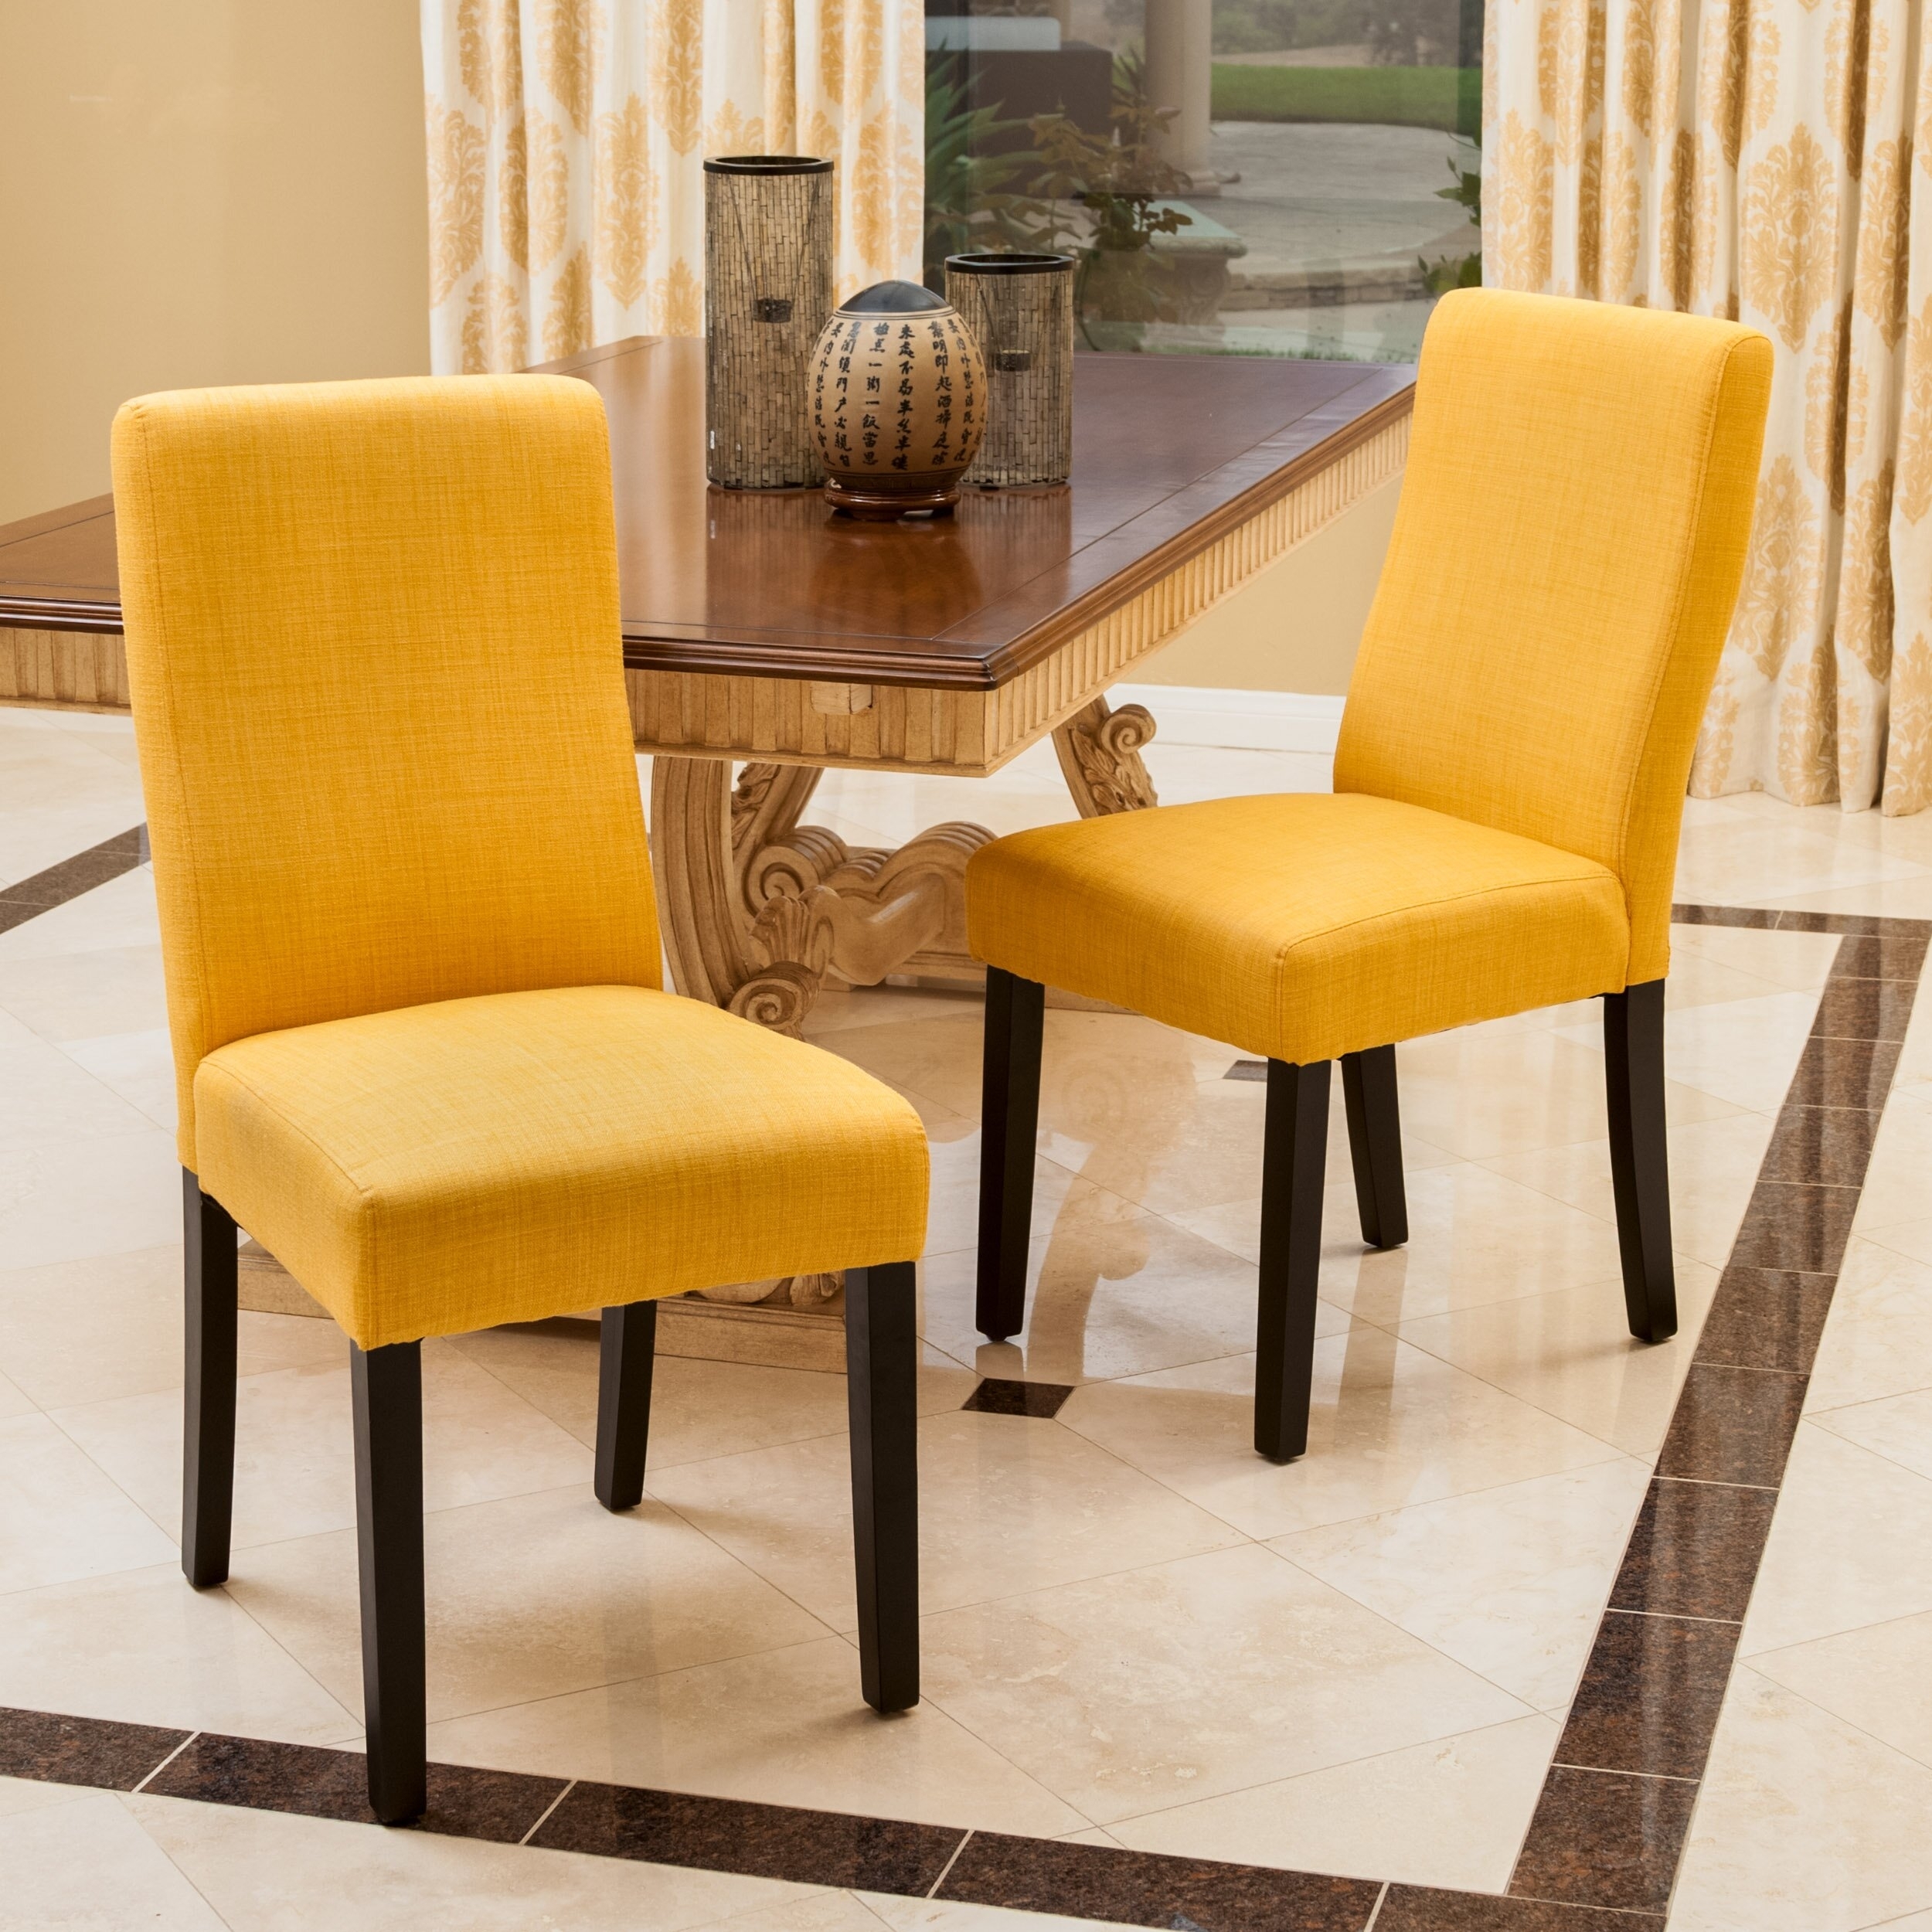 кухонные стулья желтого цвета